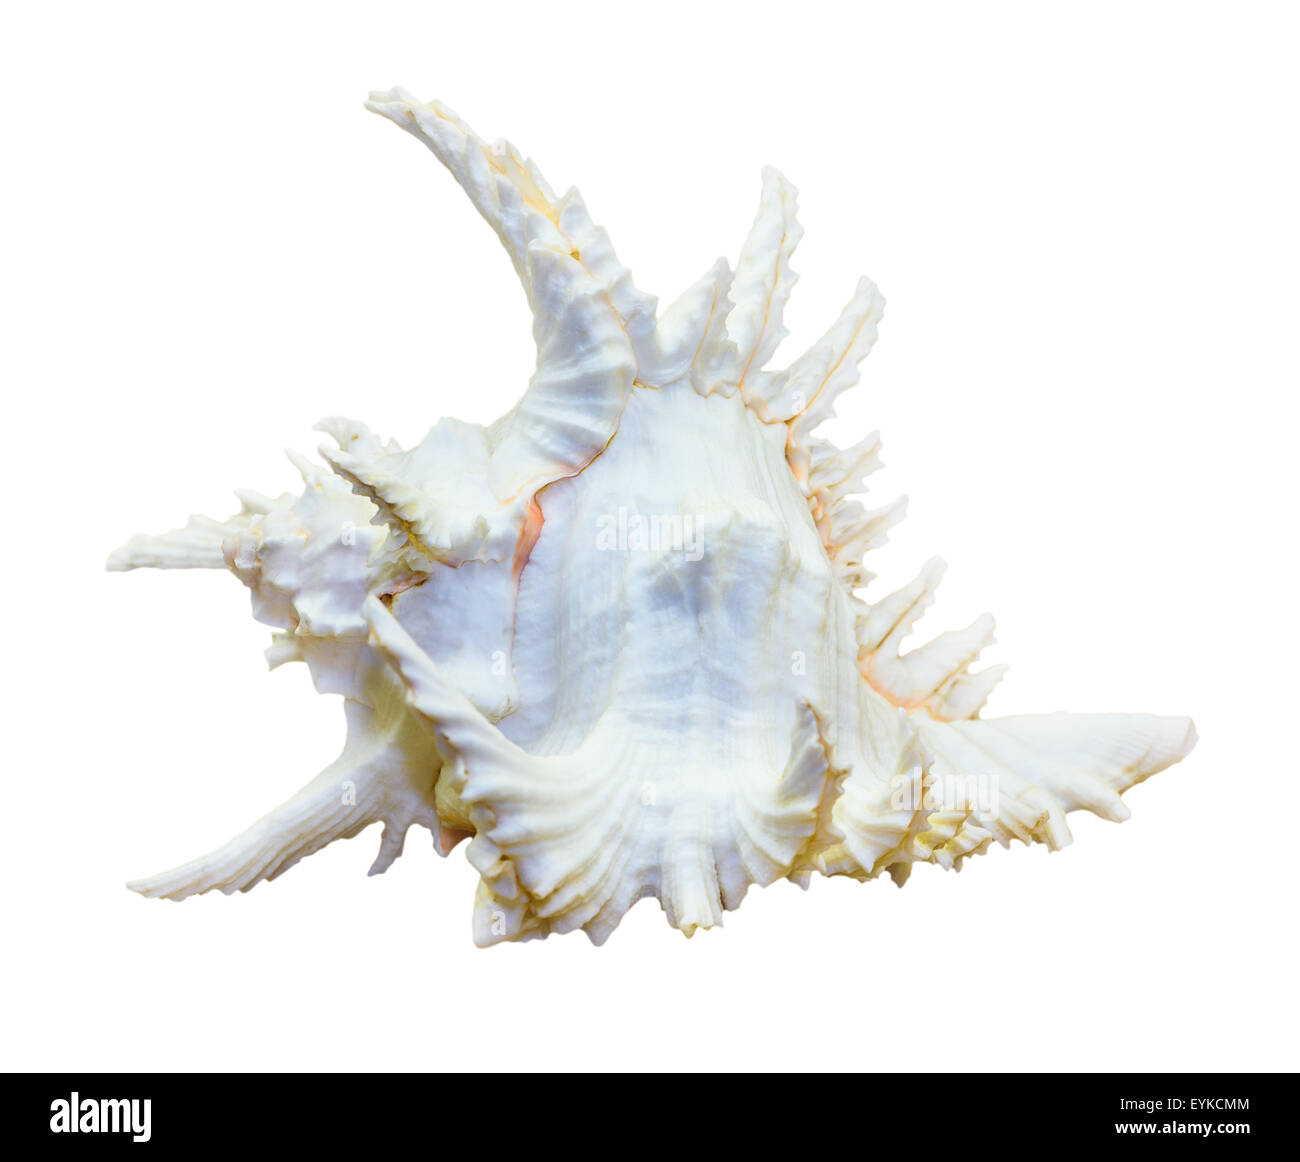 Schale von Chicoreus Ramosus, Ramose Murex oder verzweigte Murex, ist eine Art von räuberischen Meeresschnecke, marine Gastropode Molluske in der Stockfoto